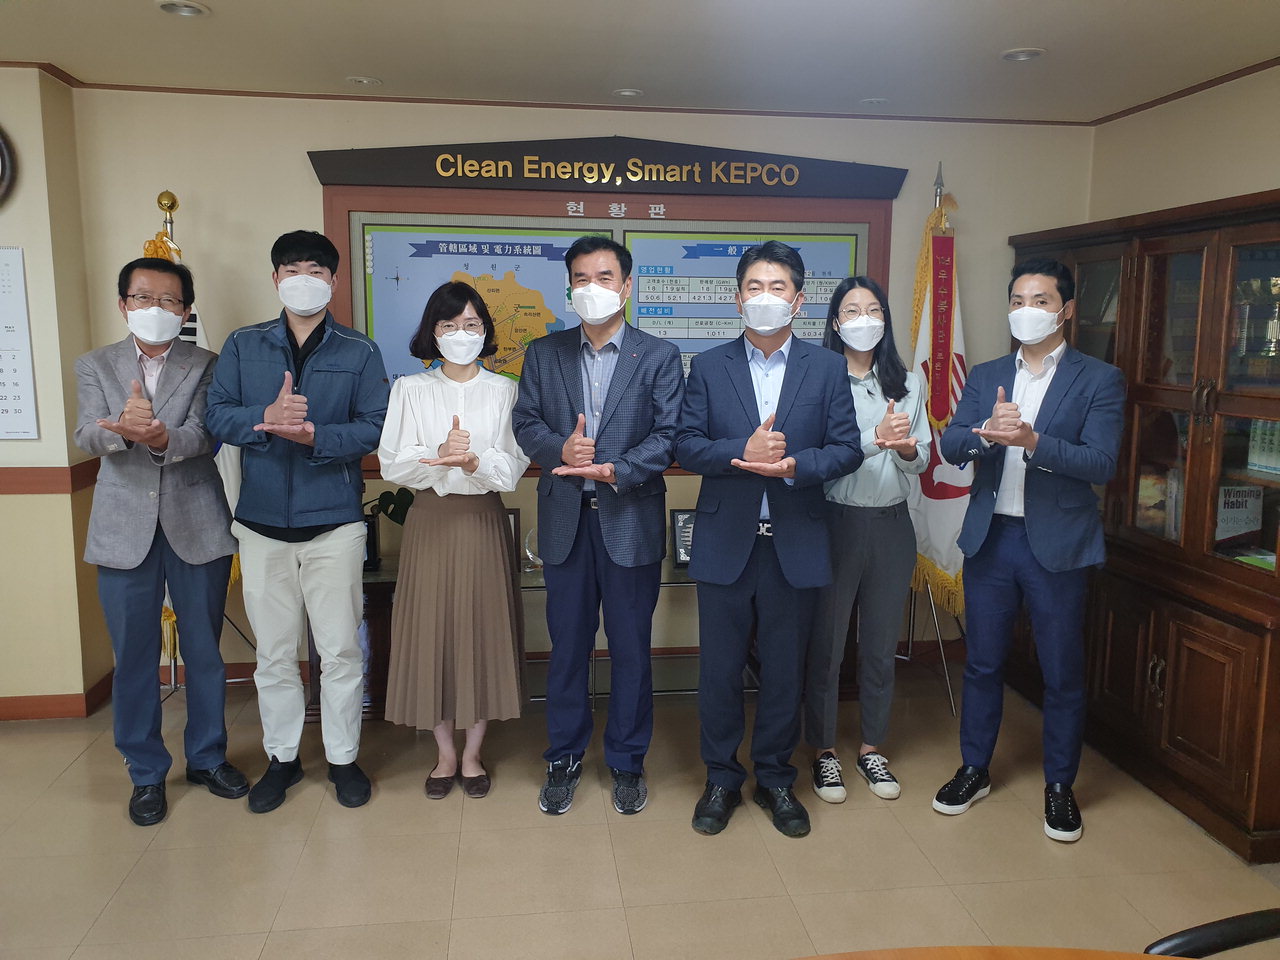 김태천 지사장 및 직원들이 지난 20일 코로나19 종식을 위해 힘쓰고 있는 의료진에 감사를 표하는 '덕분에 챌린지' 캠페인에 참여했다. / 한전 보은지사 제공